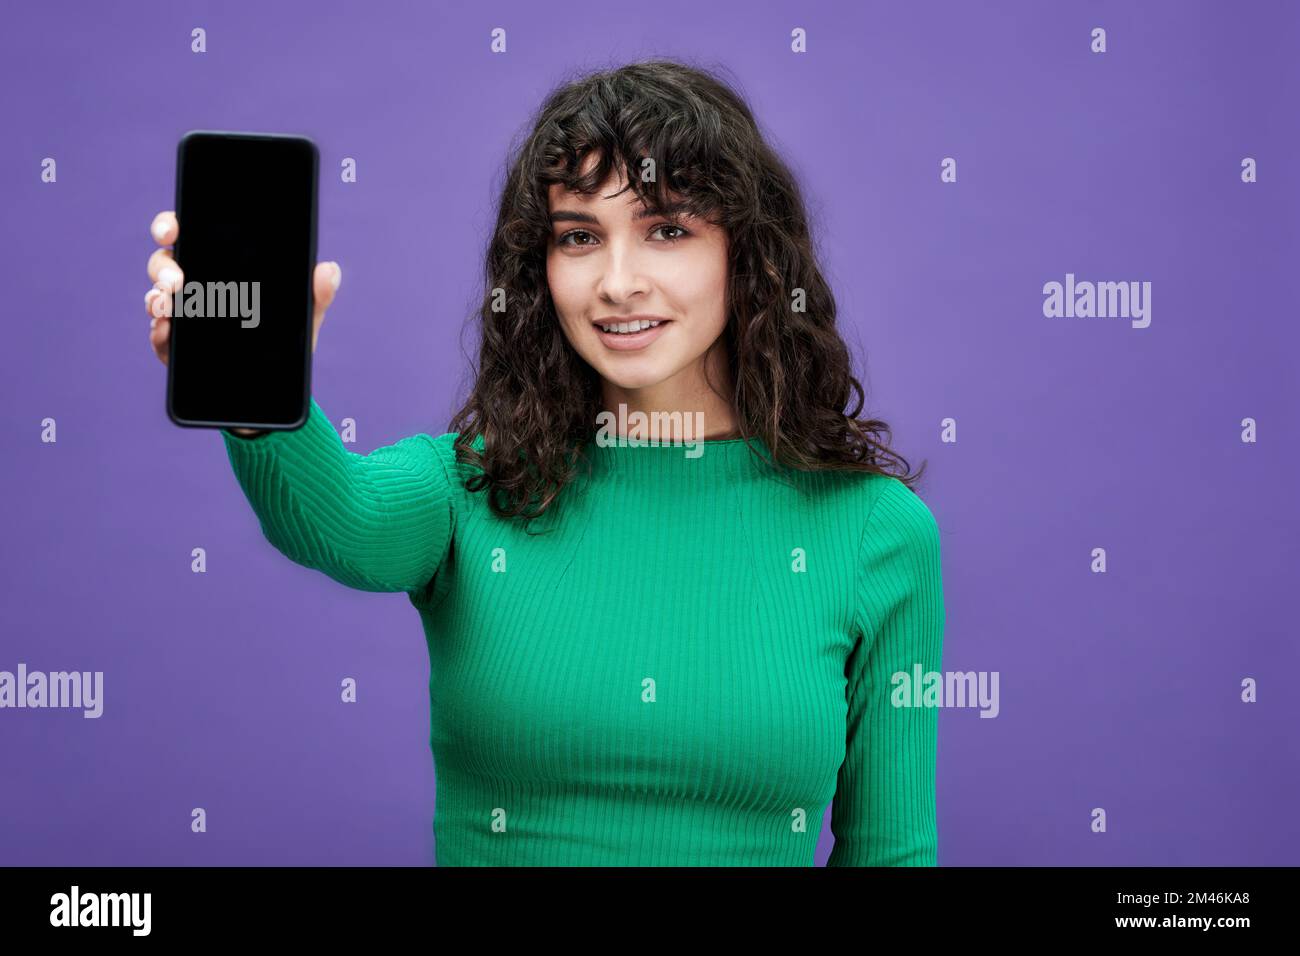 Ragazza brunette in pullover verde con maniche lunghe tenendo smartphone durante la presentazione di annuncio di vendita su sfondo viola Foto Stock